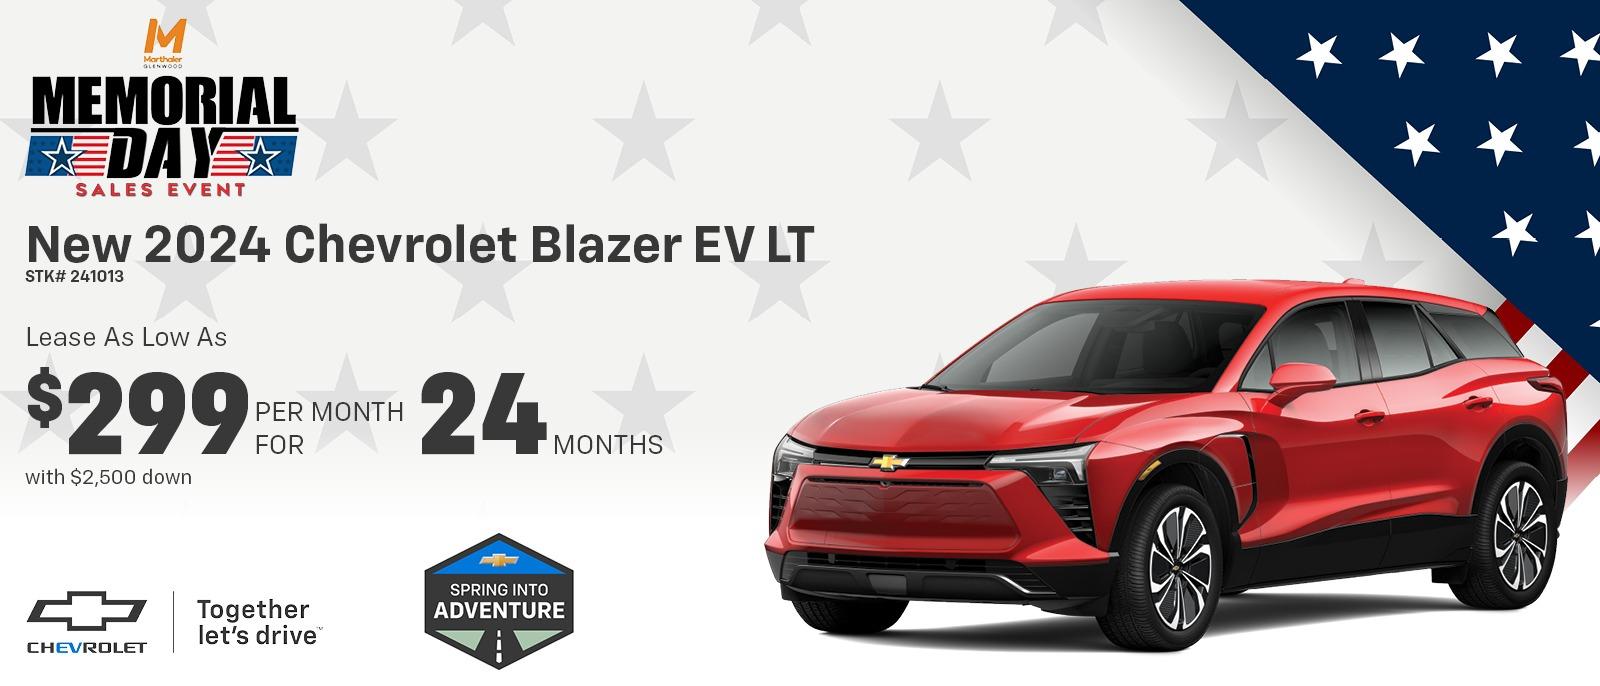 New 2024 Chevrolet Blazer EV LT